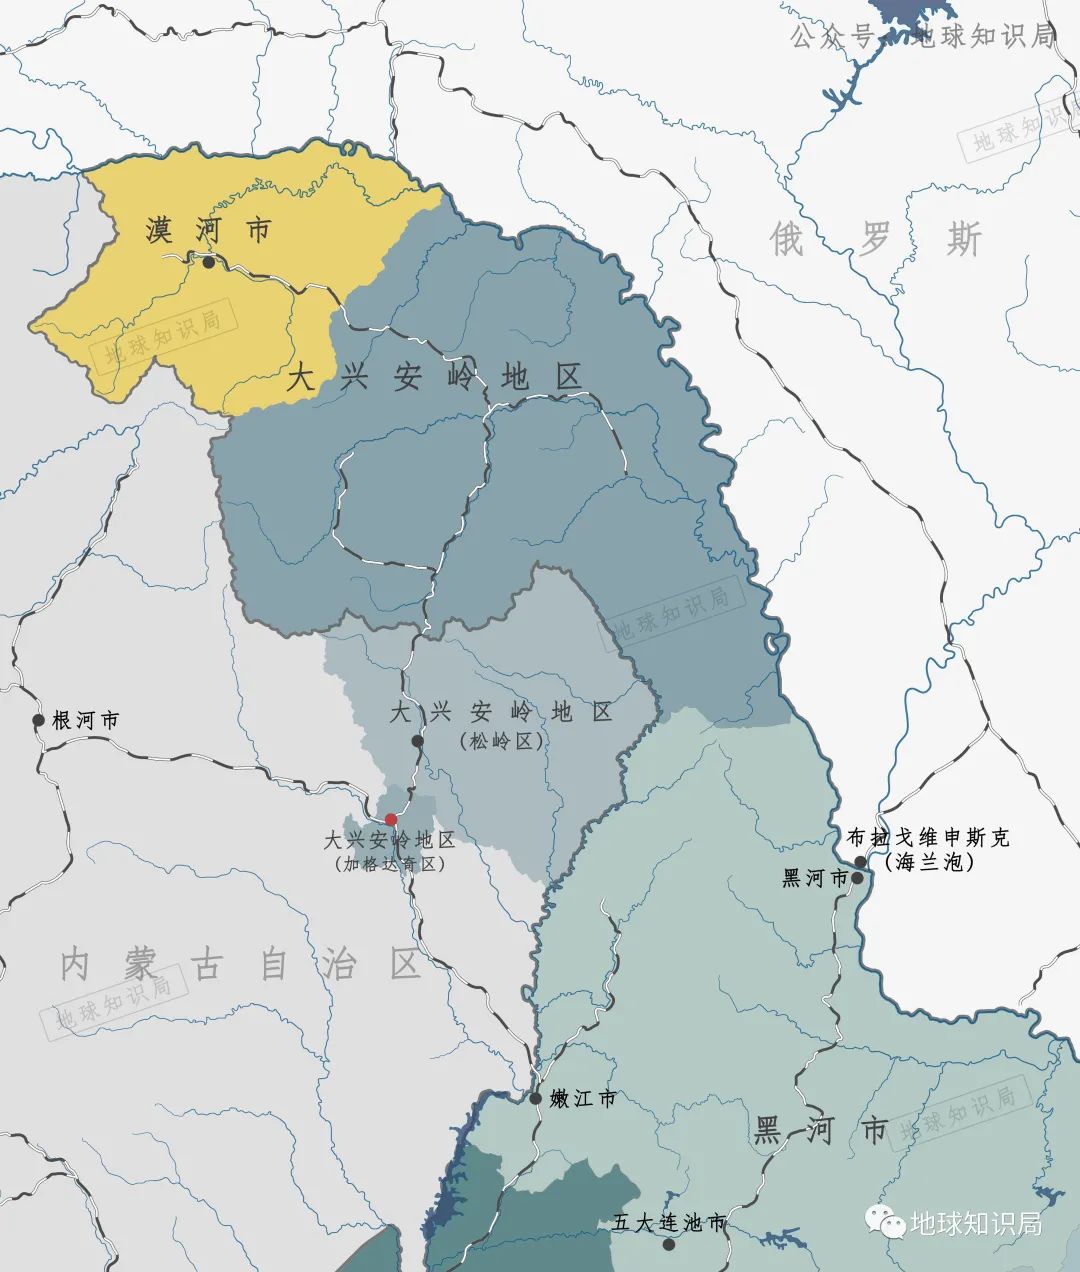 下辖的松岭区,实际上位于内蒙古自治区呼伦贝尔市的鄂伦春自治旗境内